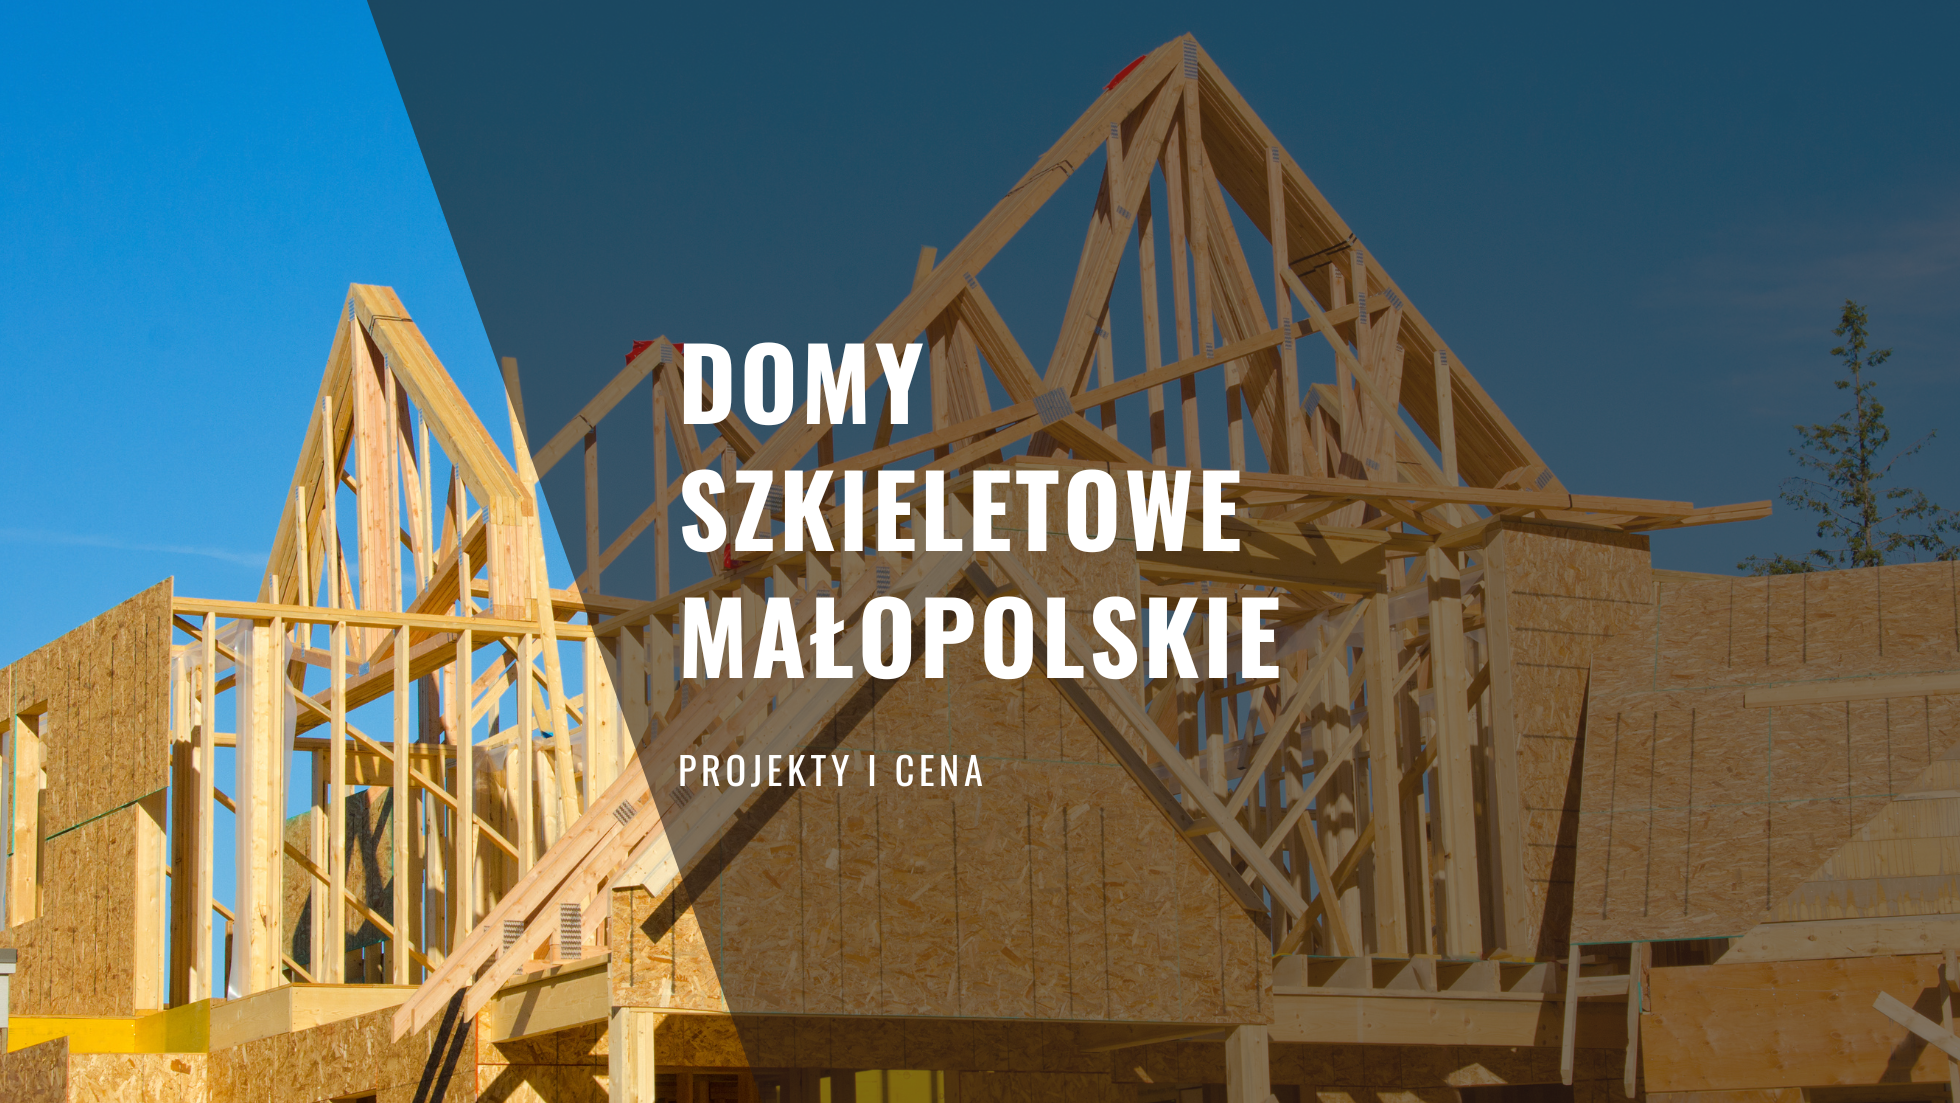 Domy szkieletowe Małopolskie